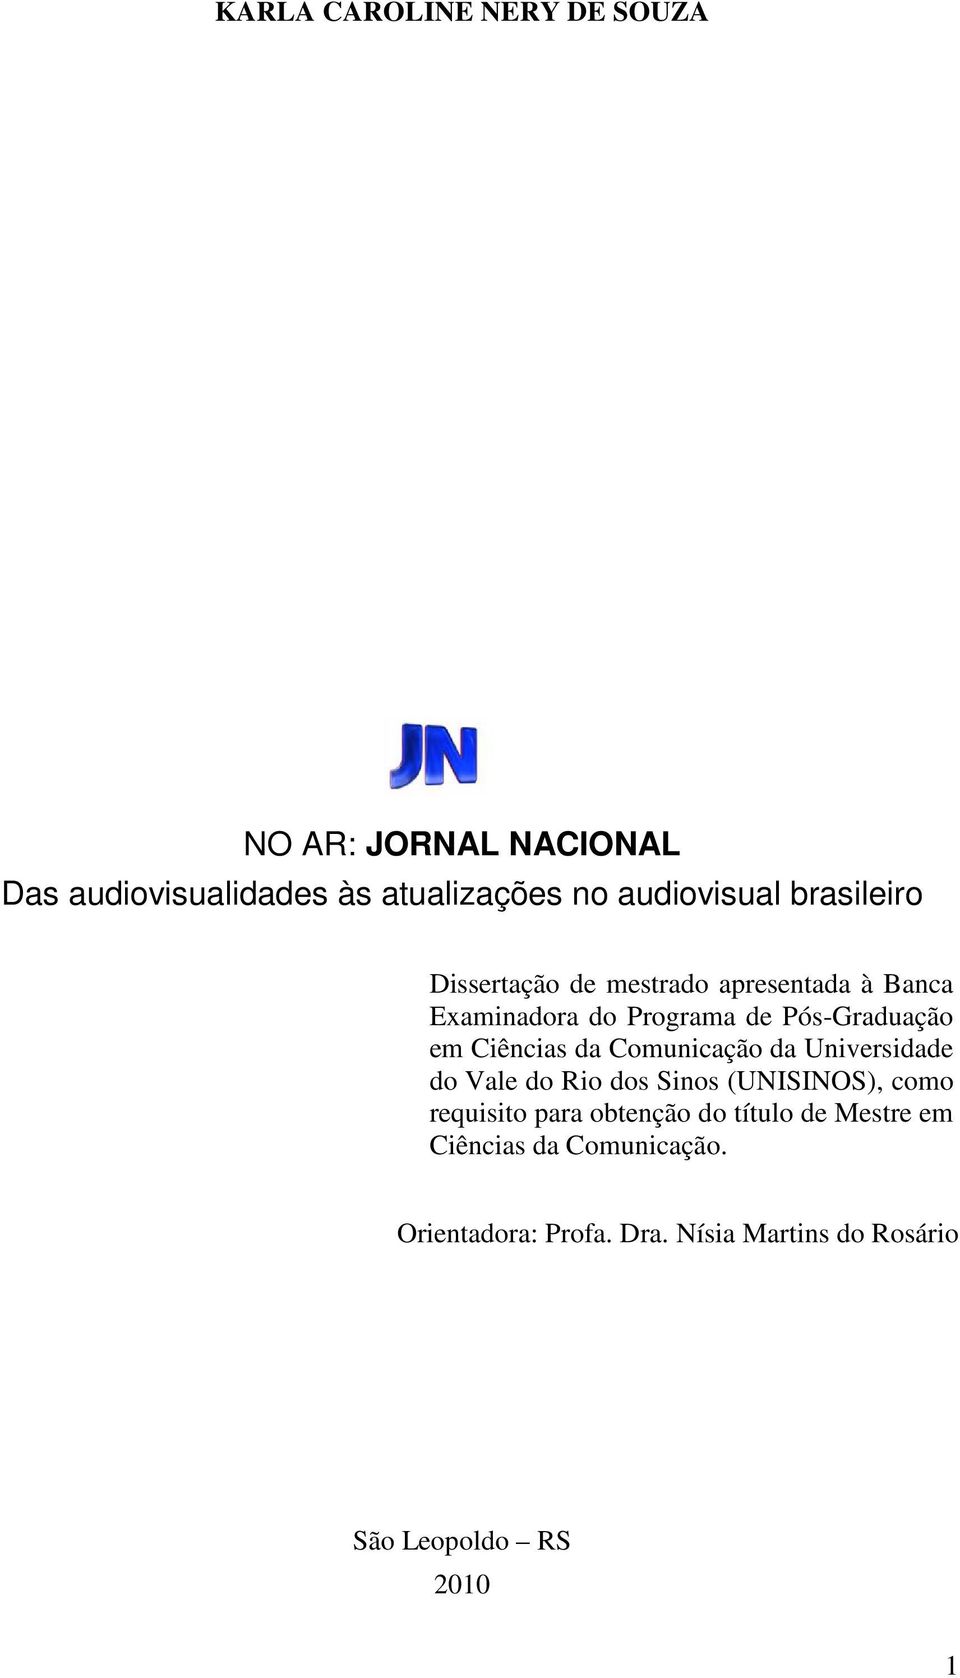 da Comunicação da Universidade do Vale do Rio dos Sinos (UNISINOS), como requisito para obtenção do título